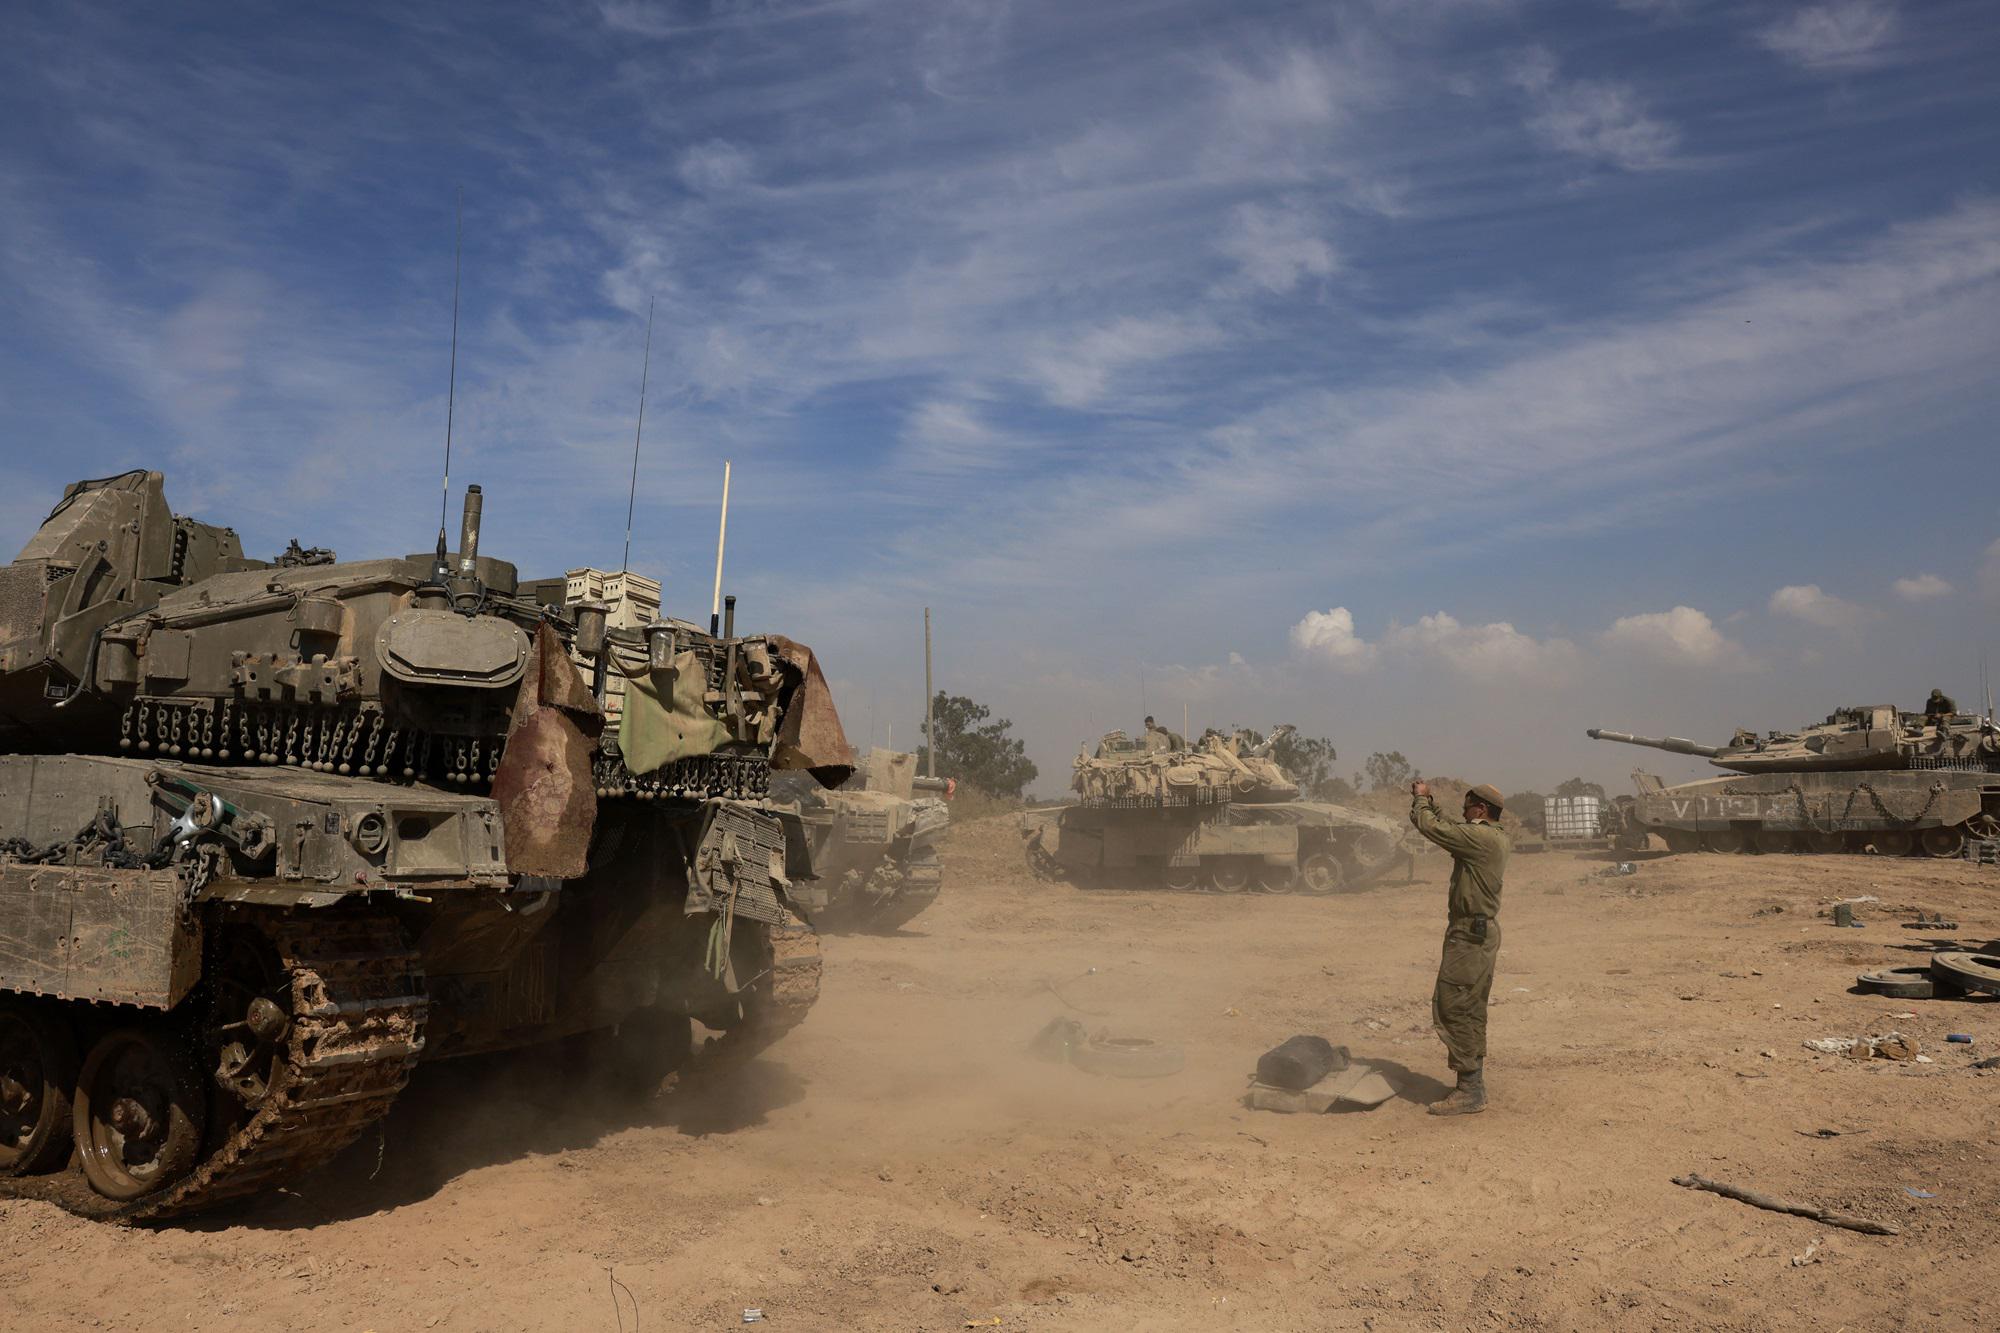 Guerra in Medio Oriente, la minaccia di Israele: “Non possiamo non rispondere”